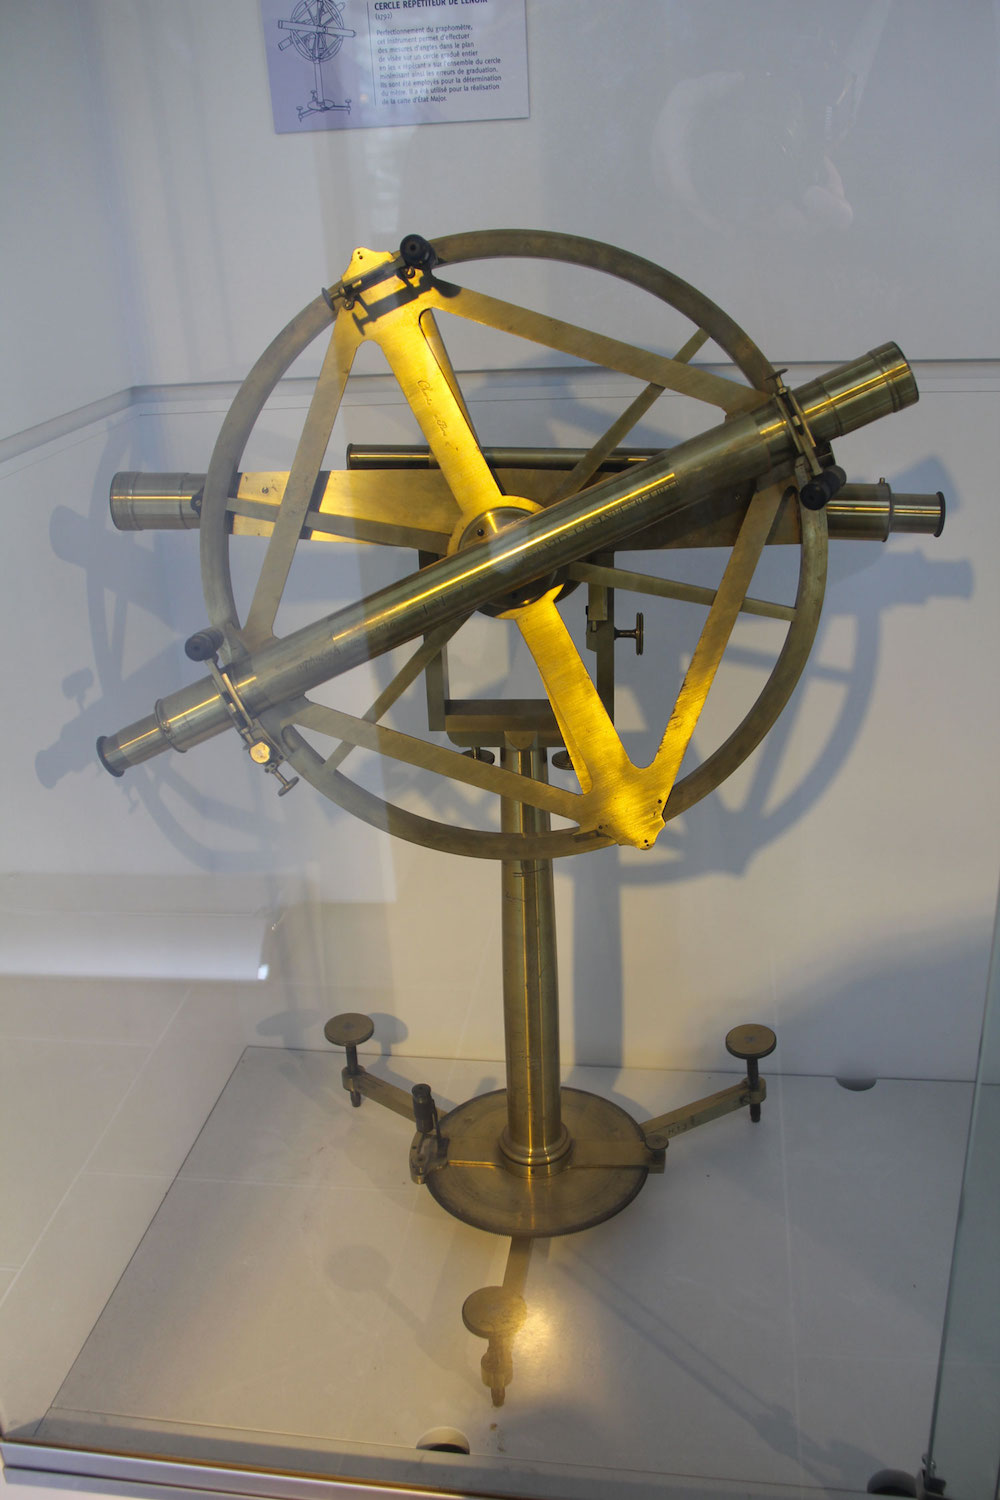 Le cercle répétiteur de Lenoir permet de calculer les angles. Il a servi pour déterminer la longueur du mètre (un mètre = dix millionième de la distance qui va du Pôle nord à l’équateur en passant par Paris). © Globe Reporters